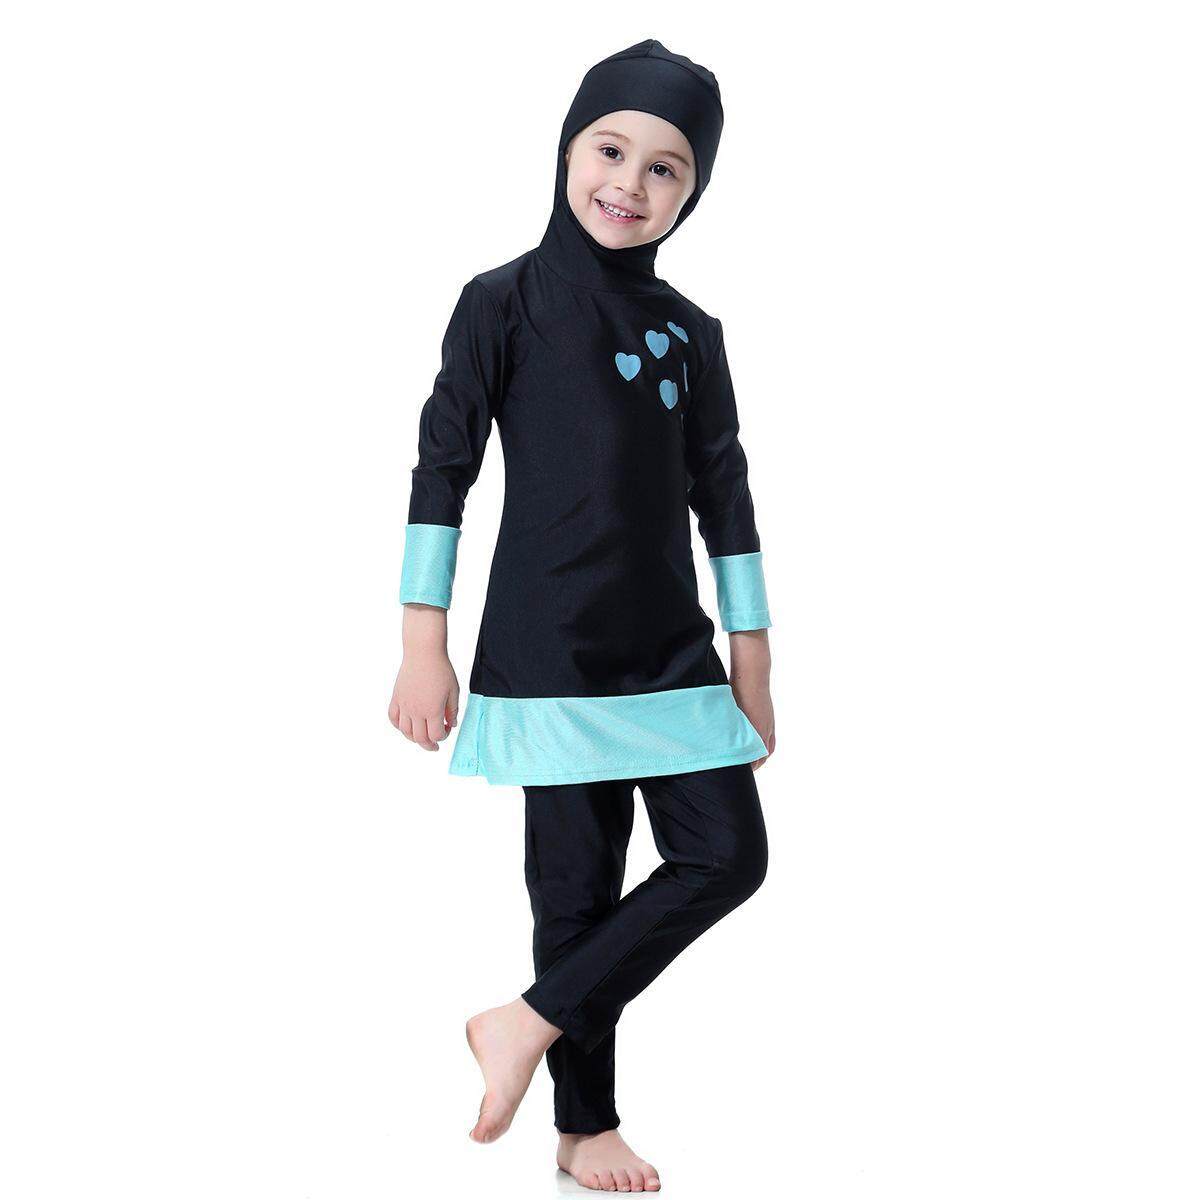 (AURAT DITUTUP) WJS Cute Islamic Swim Wear Kids Girls Muslim Swimwear ...